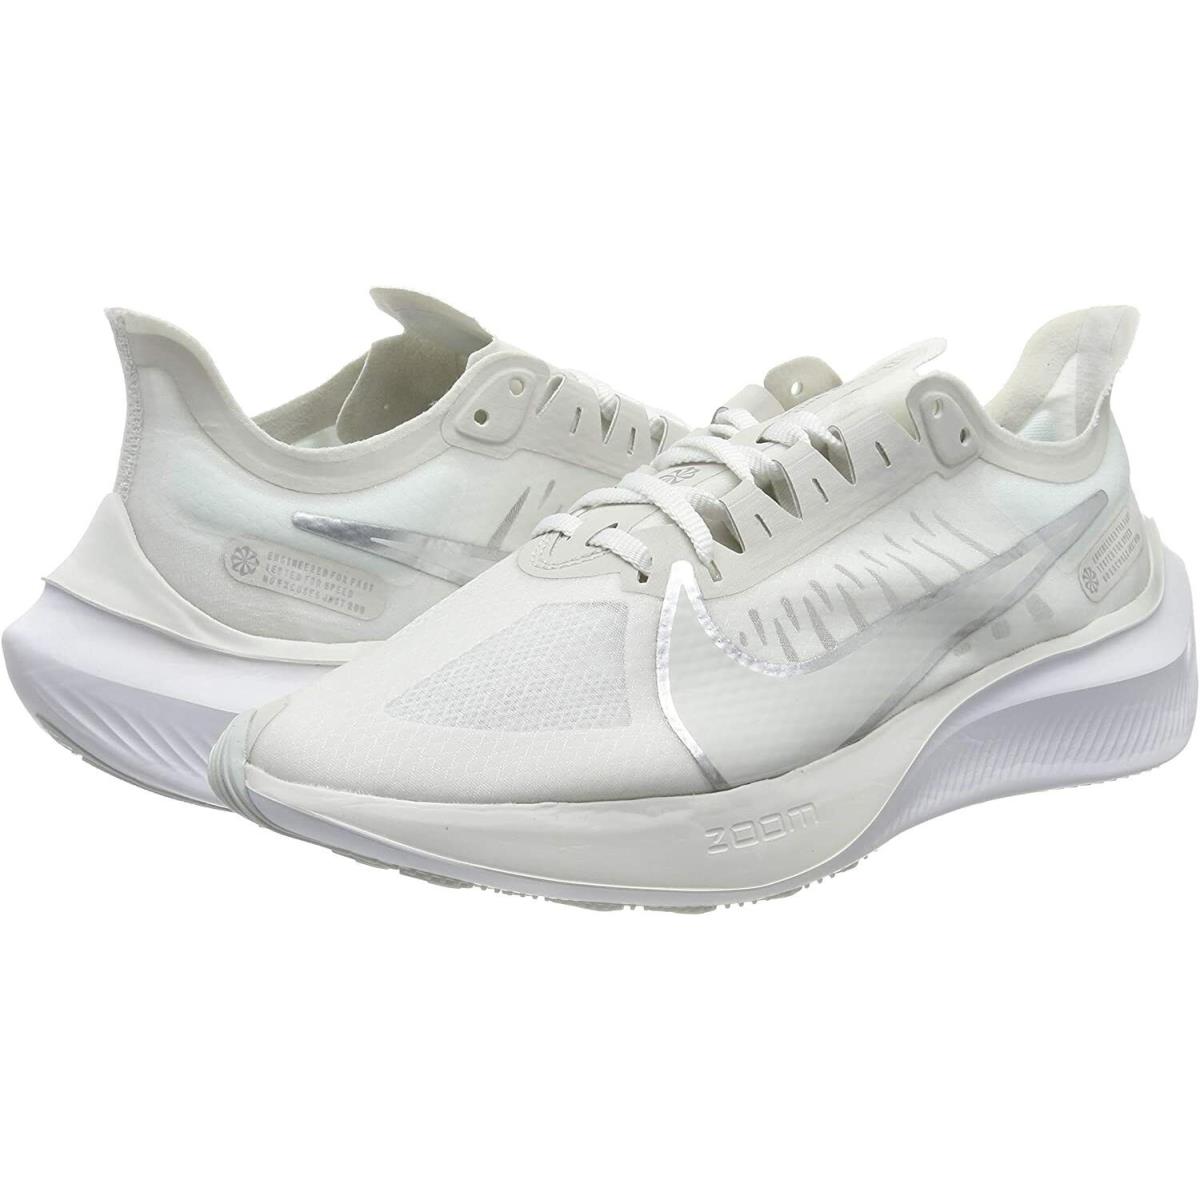 Nike shoes Shox Gravity - White 5